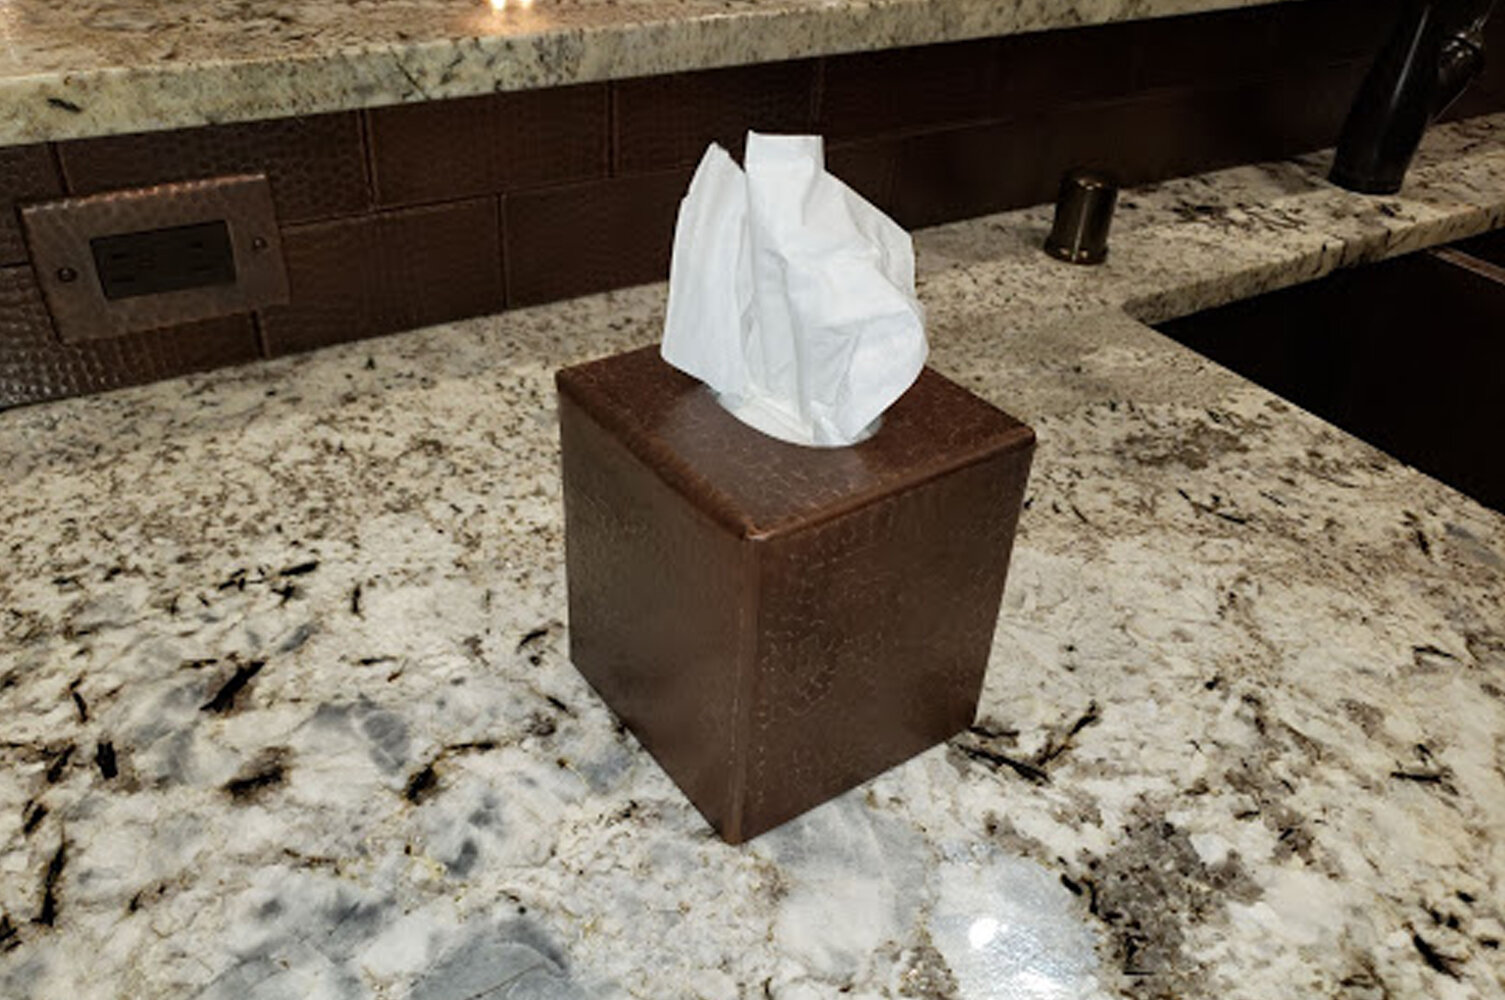 bronze tissue box cover